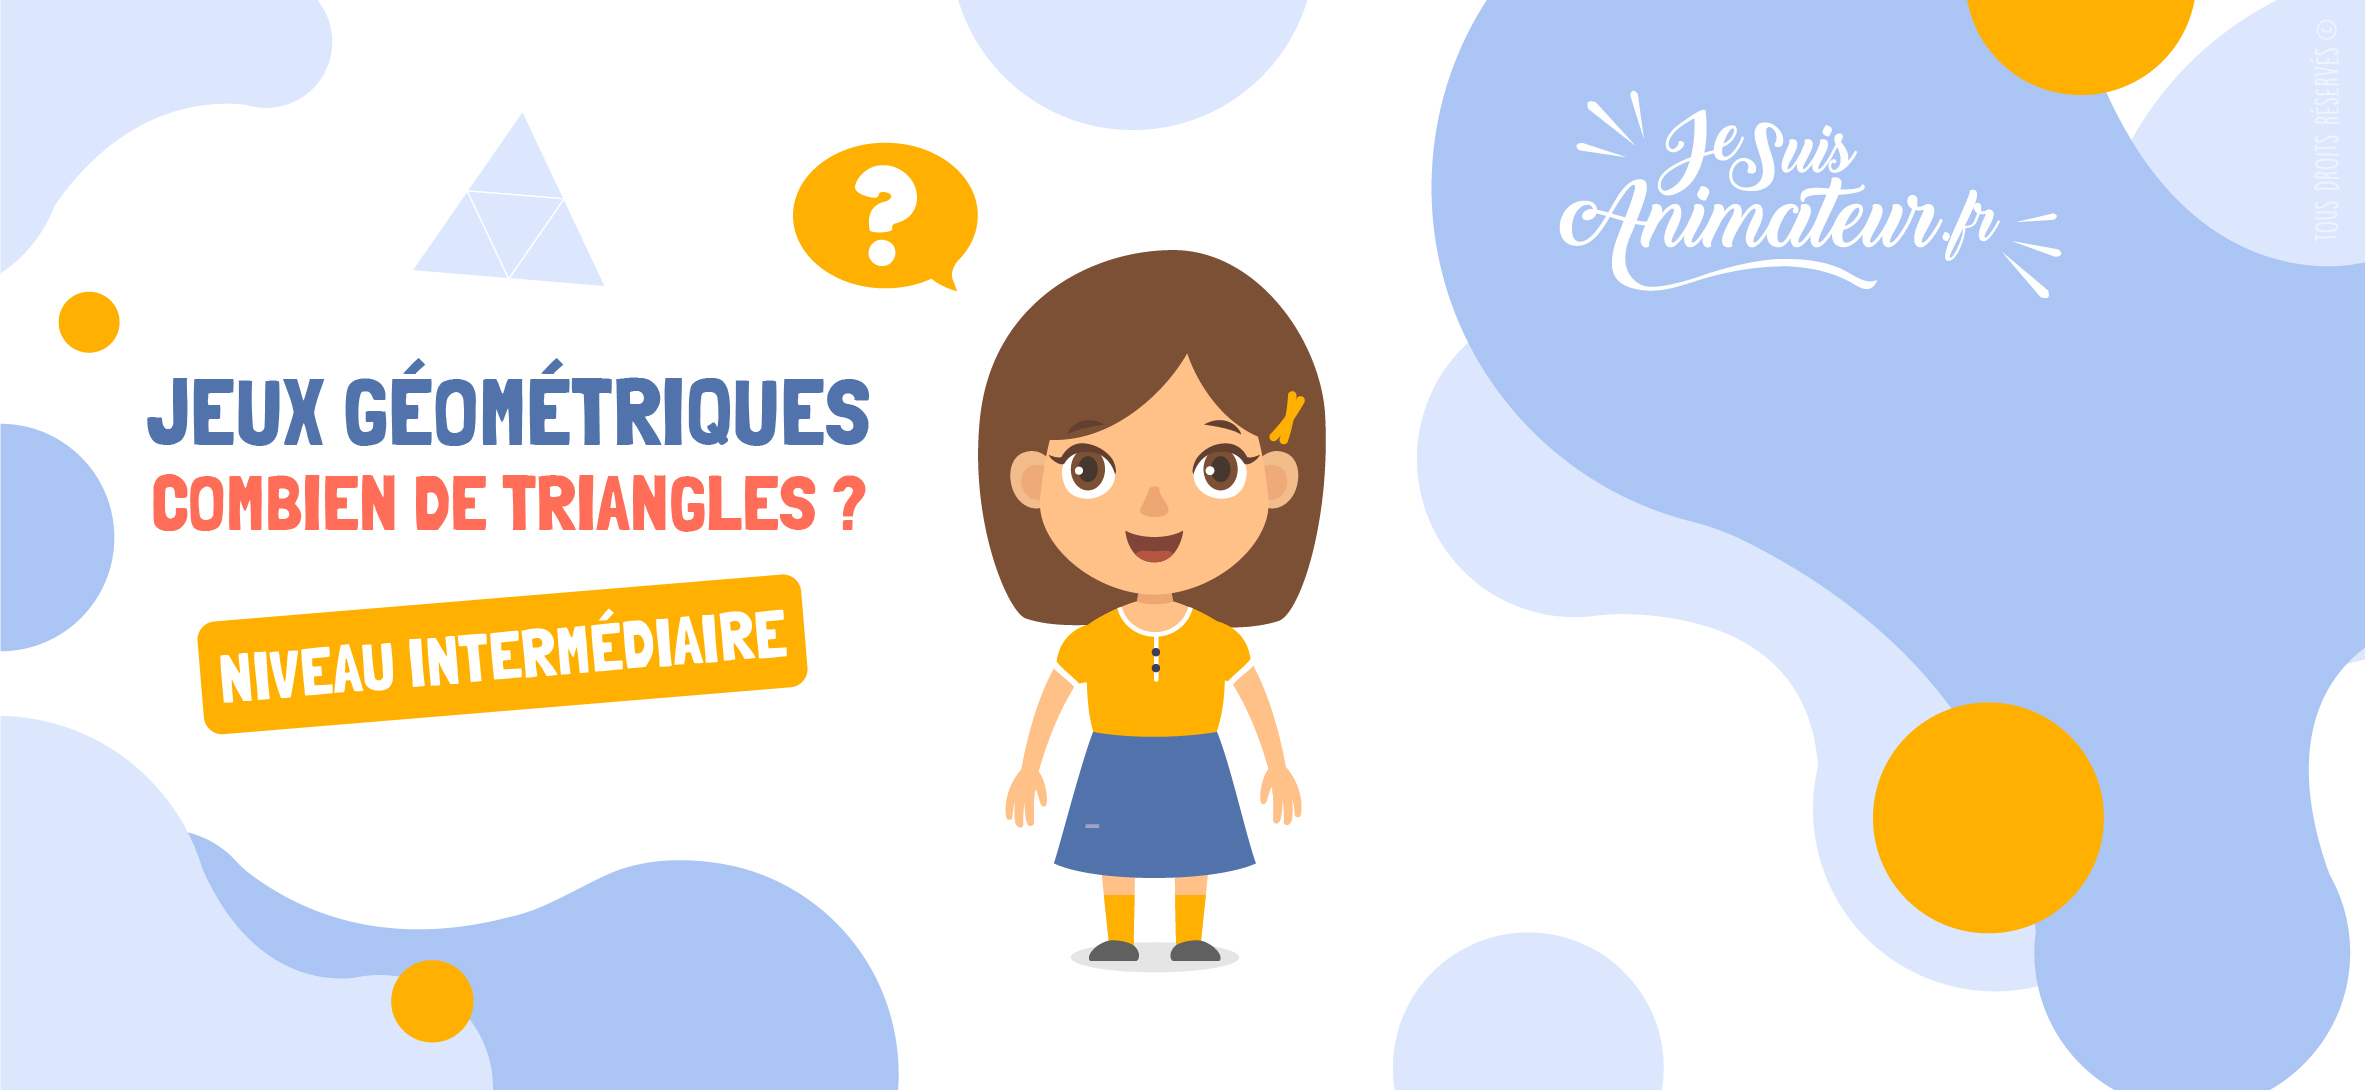 Combien de triangles comptez-vous dans ces figures ? (niveau intermédiaire) | JeSuisAnimateur.fr